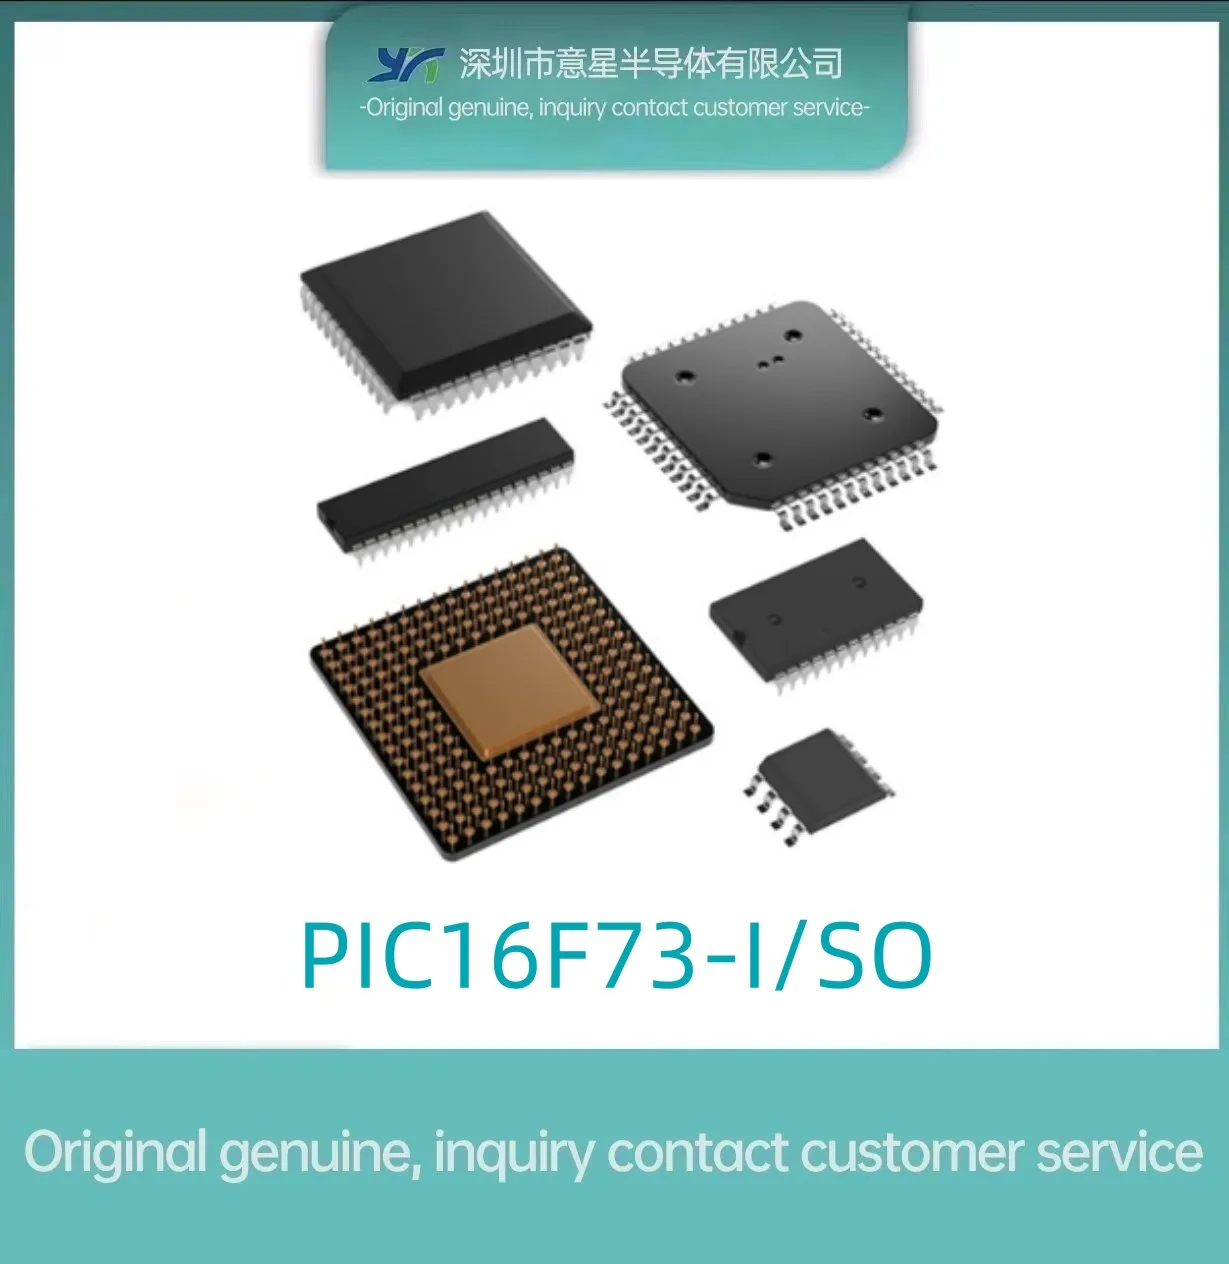 PIC16F73-I /SO опаковка SOP28 микроконтролер MUC истински оригинал